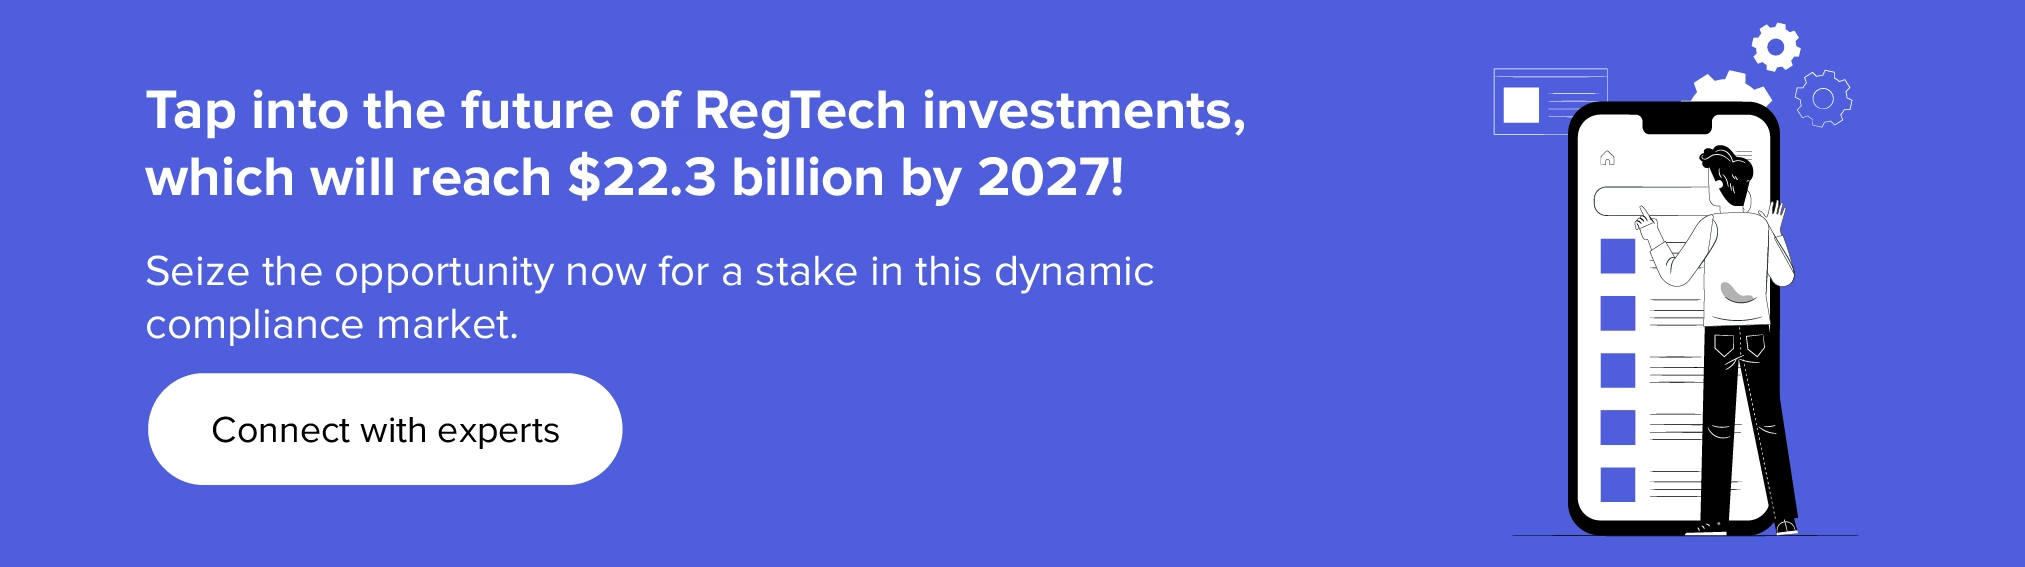 Explore o futuro dos investimentos RegTech com nossos especialistas